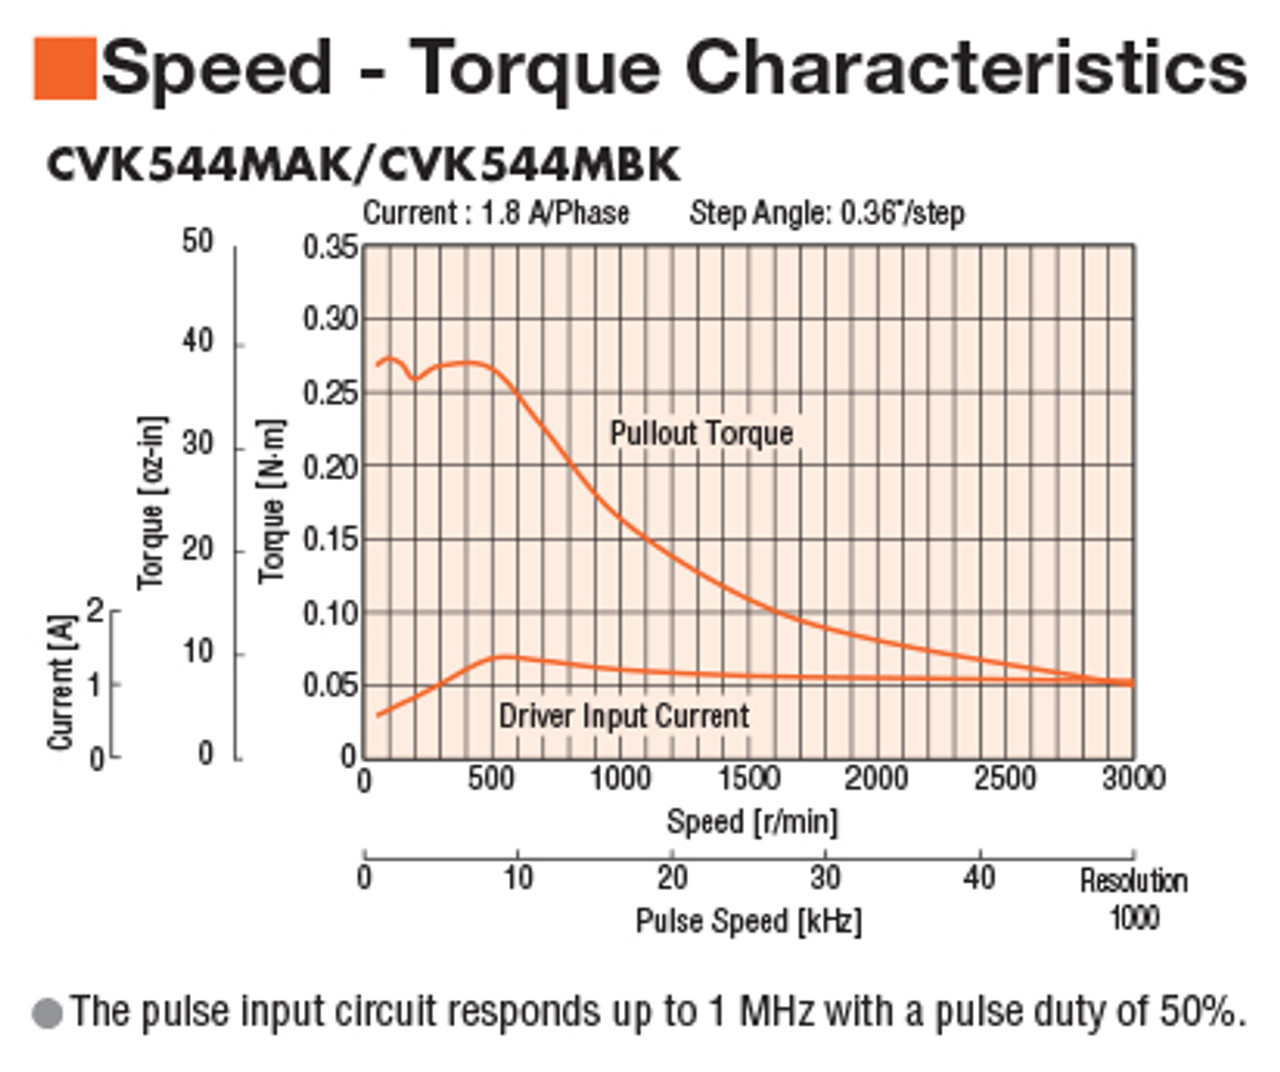 CVK544MAK - Speed-Torque